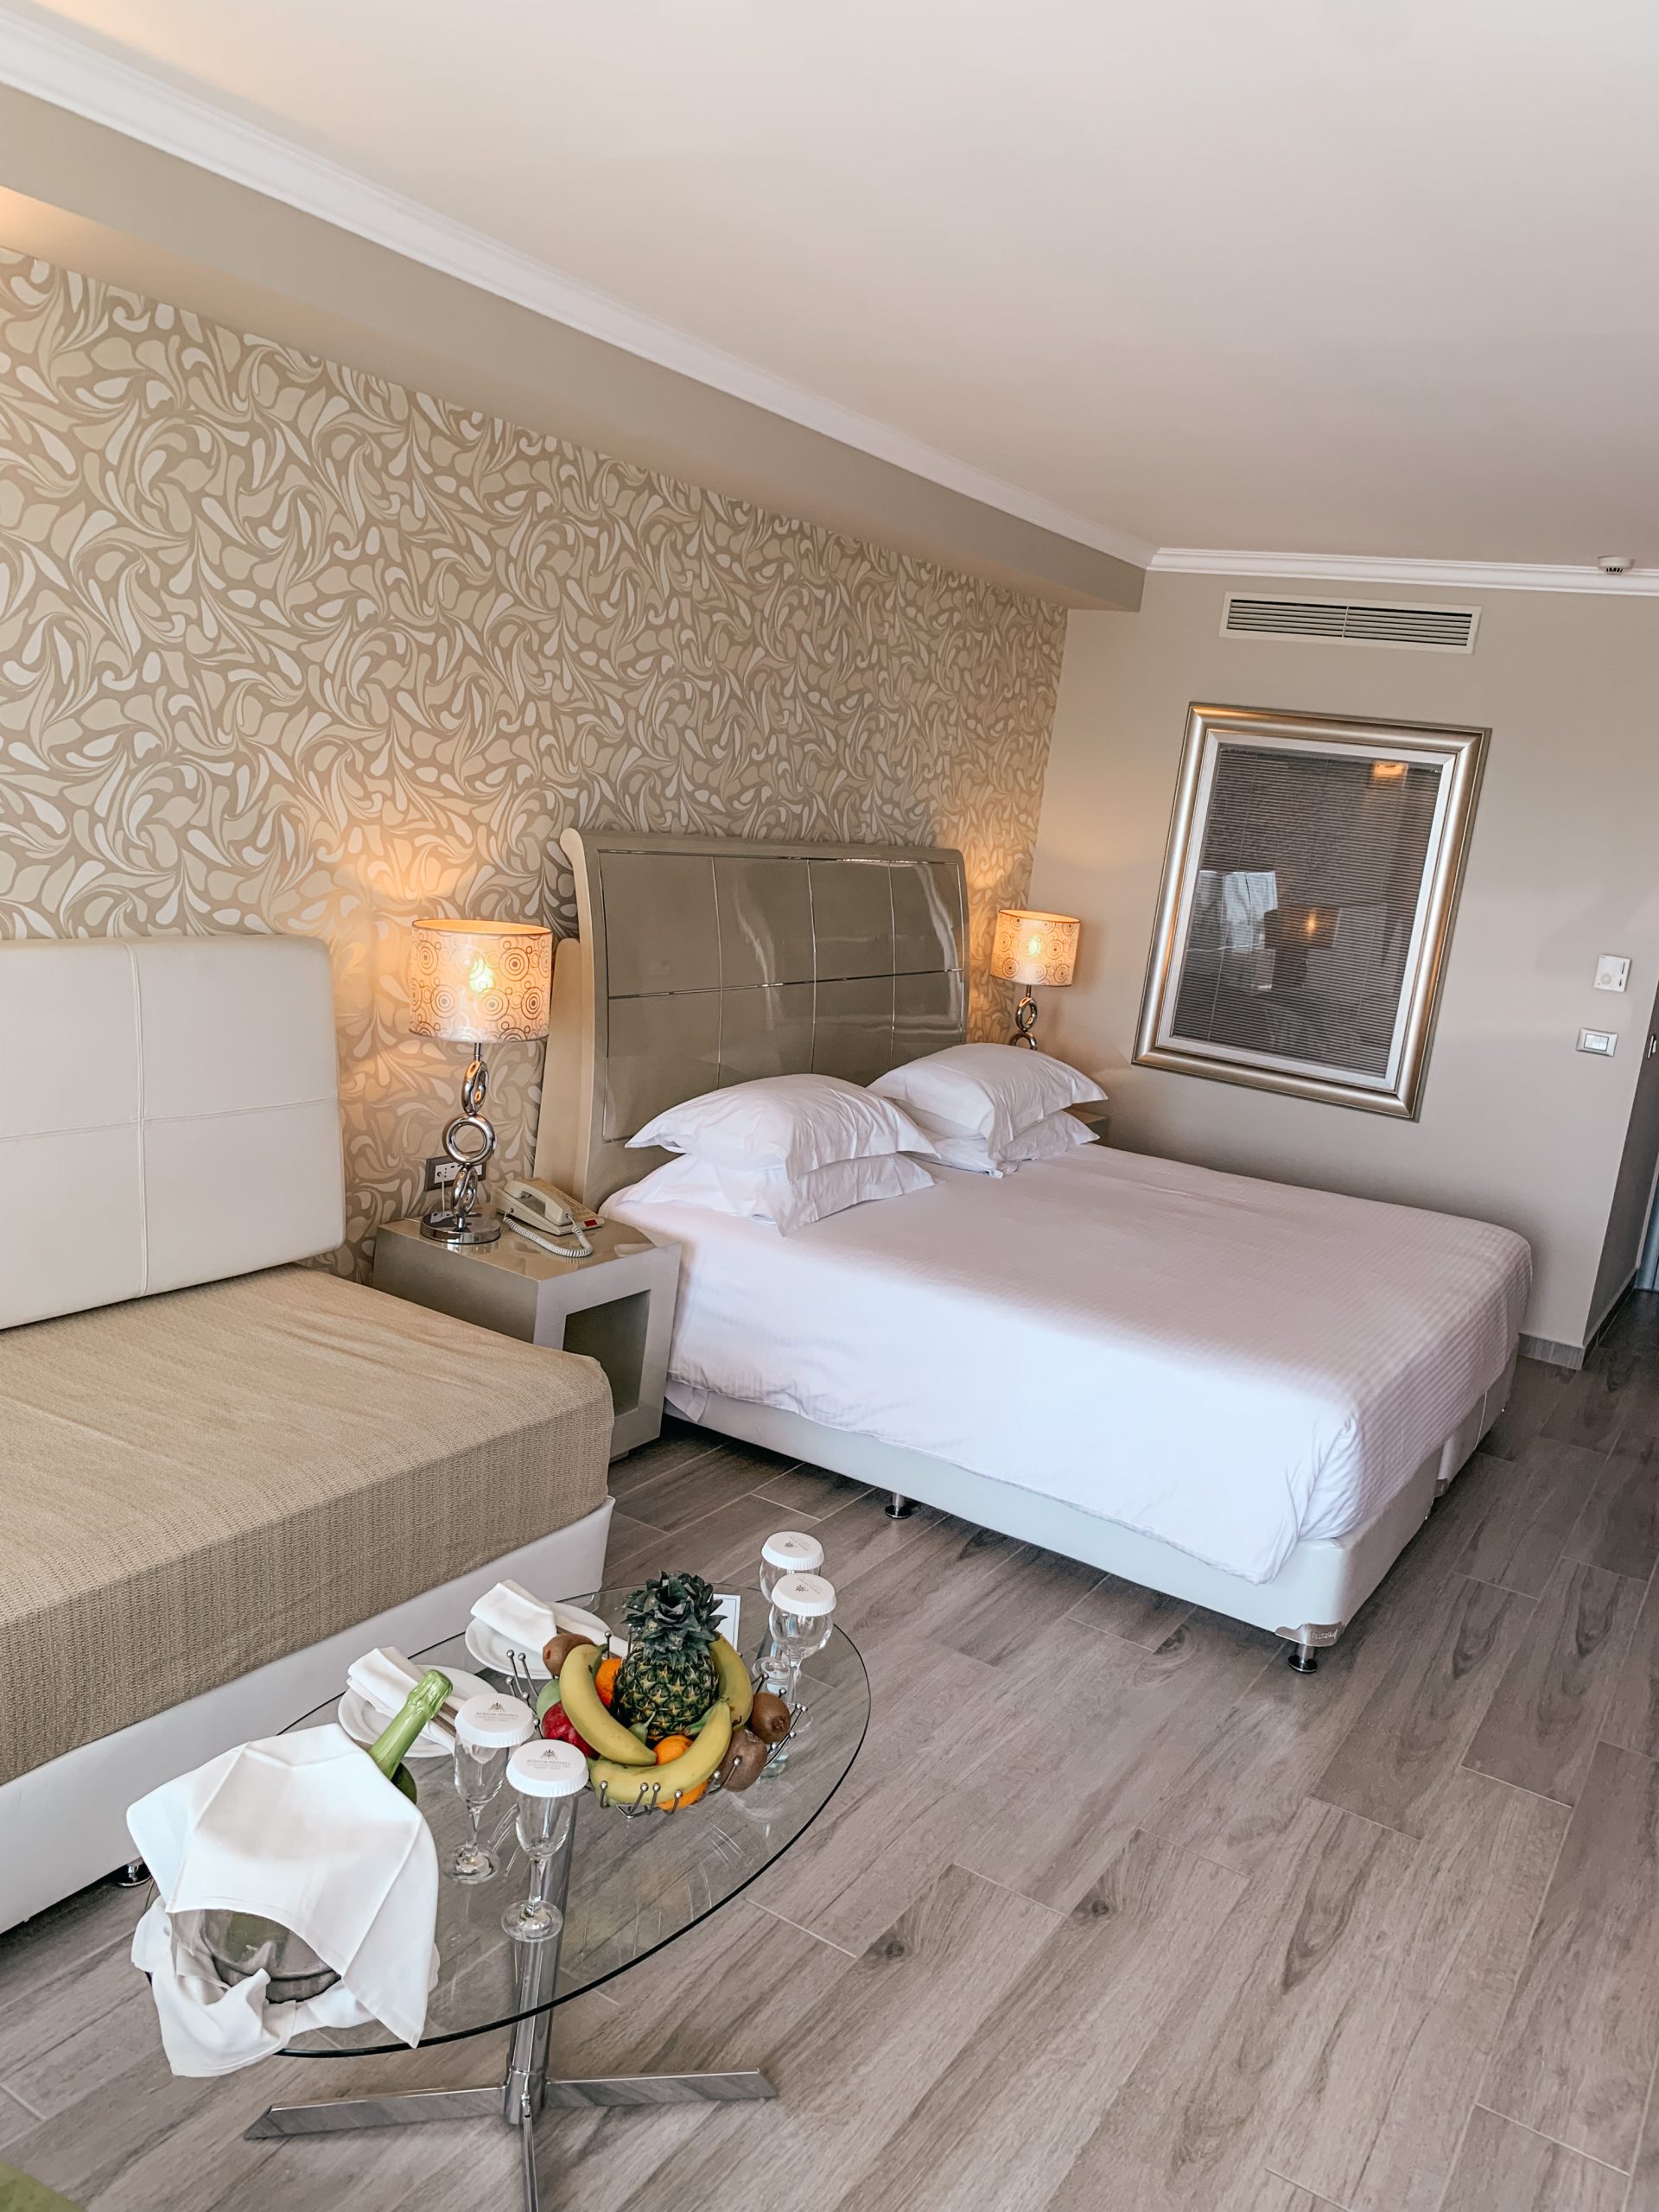 Holiday in Rhodes, Greece. Atrium Hotels. Atrium Platinum Resort Hotel & Spa. Best Hotels in Rhodes | Rooms